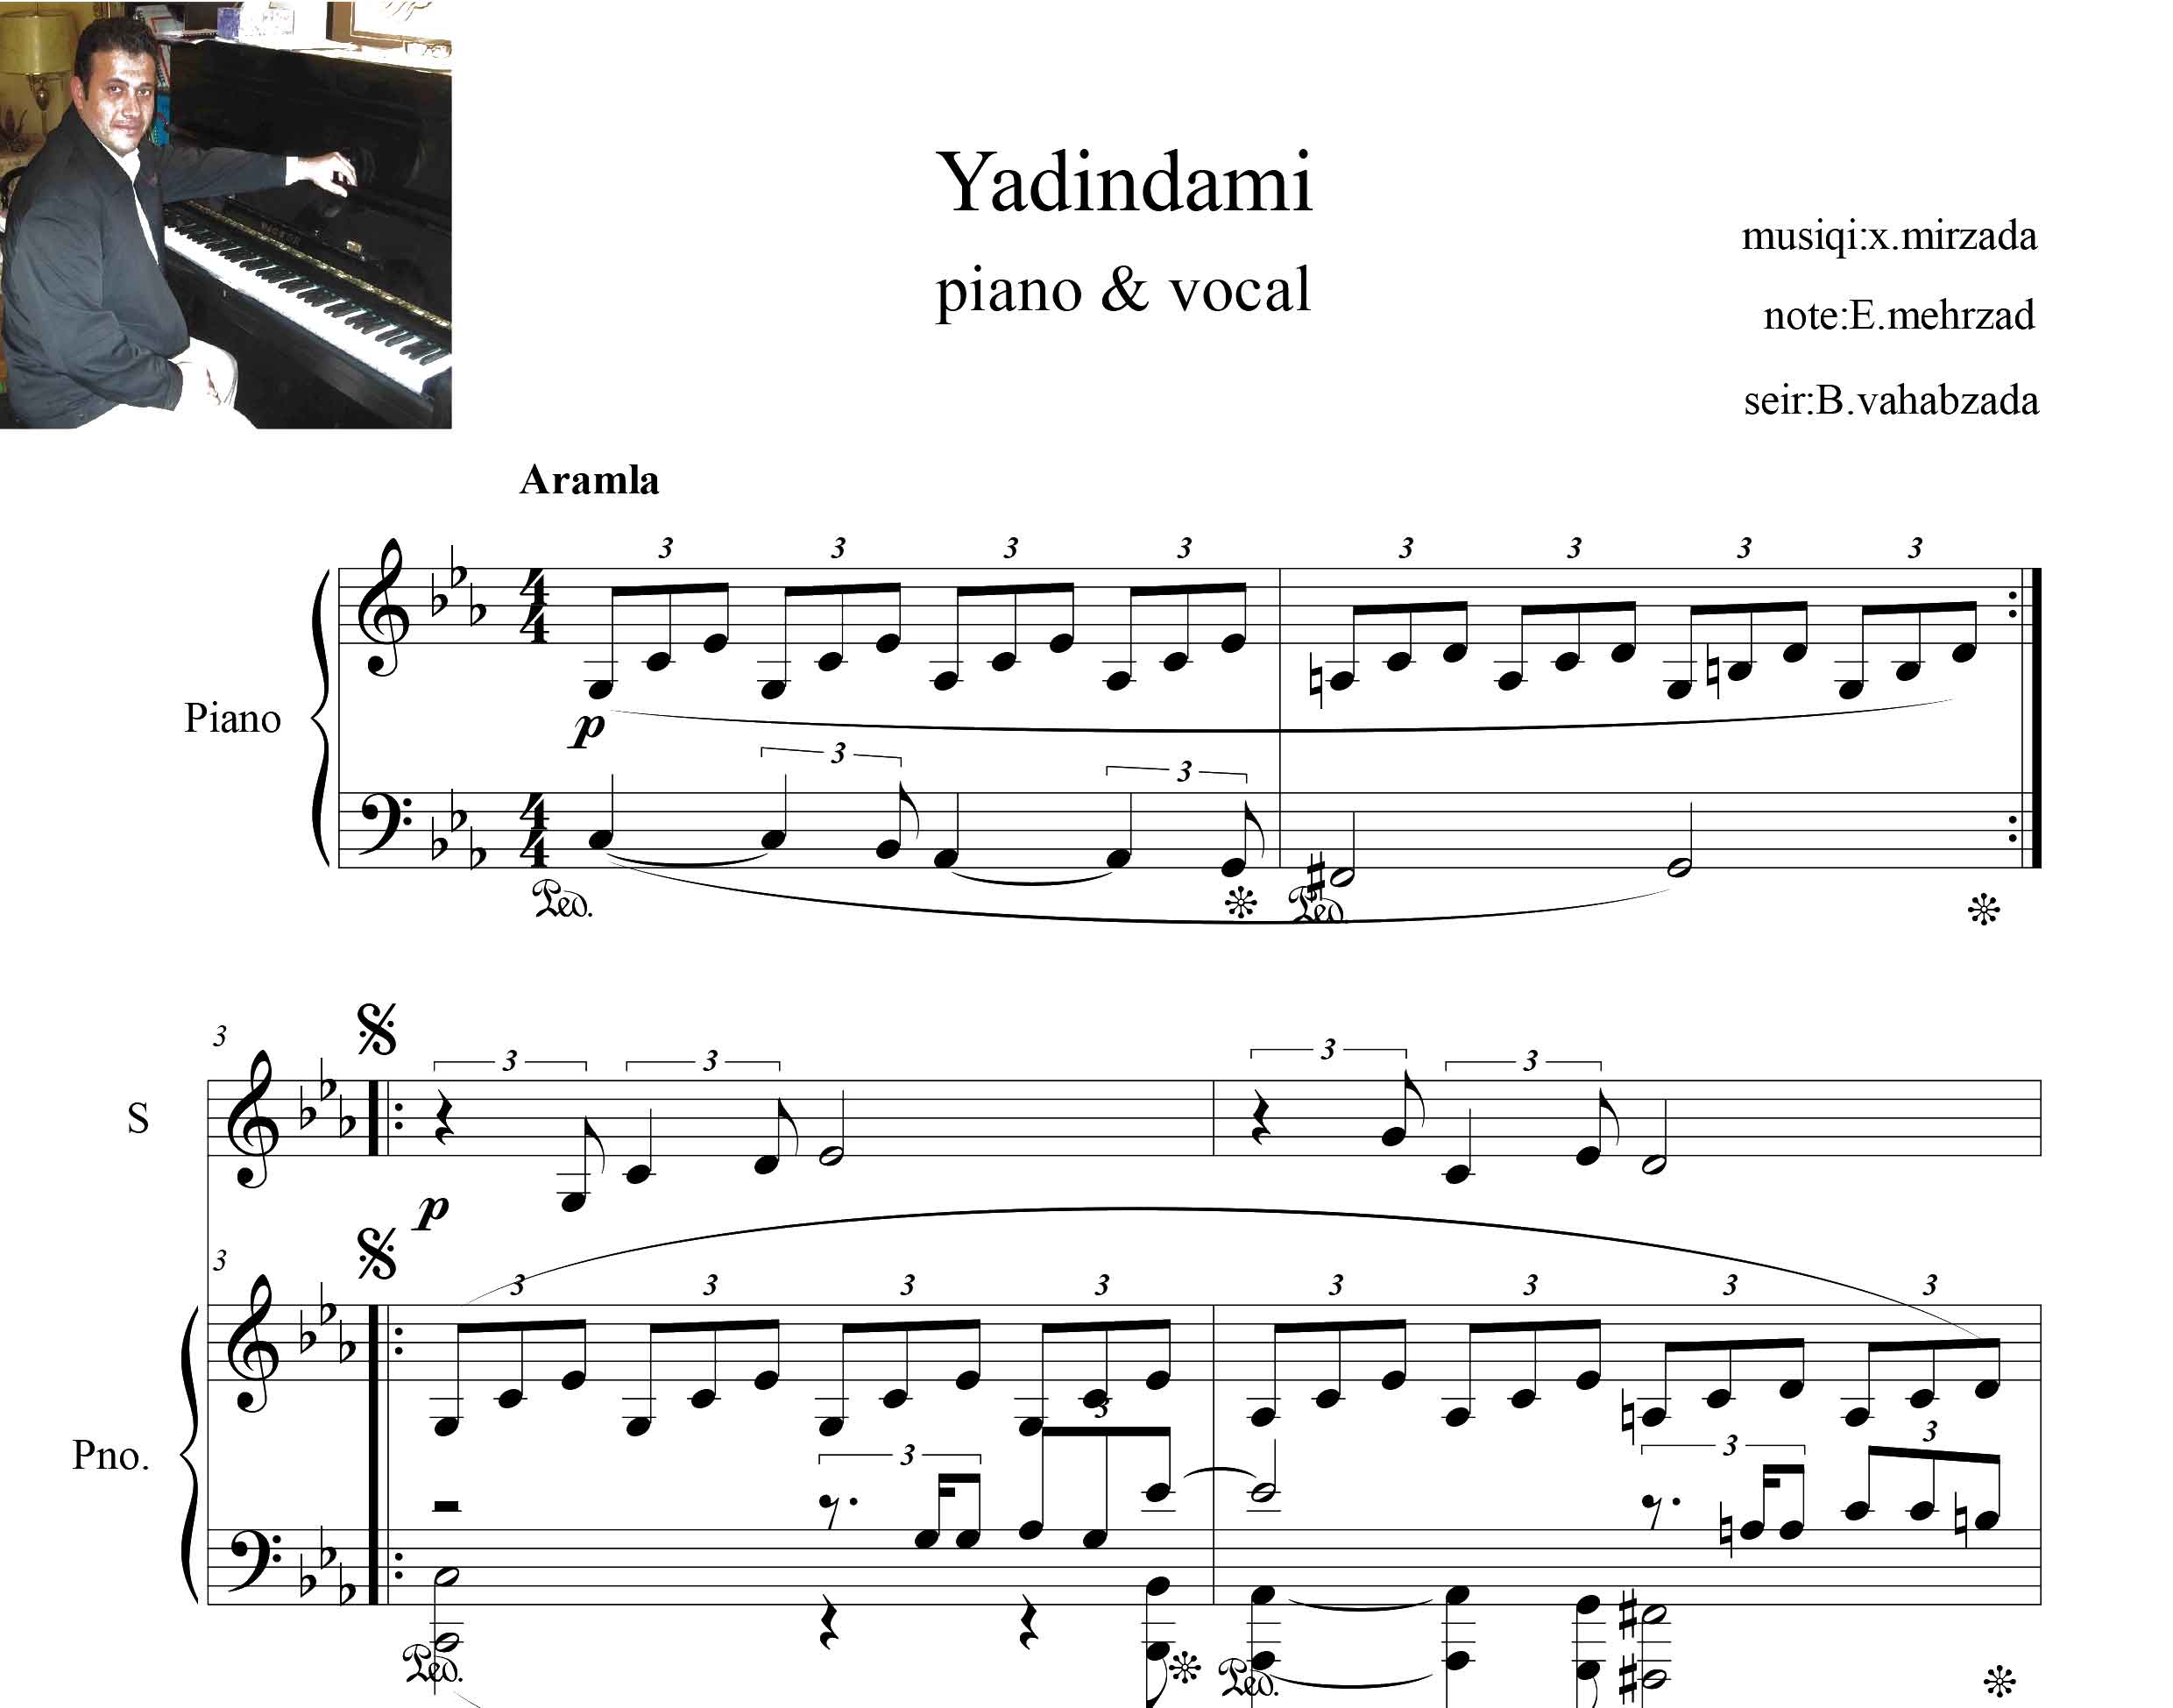 نت اصلی پیانو و آواز یادیندامی (yadindami)